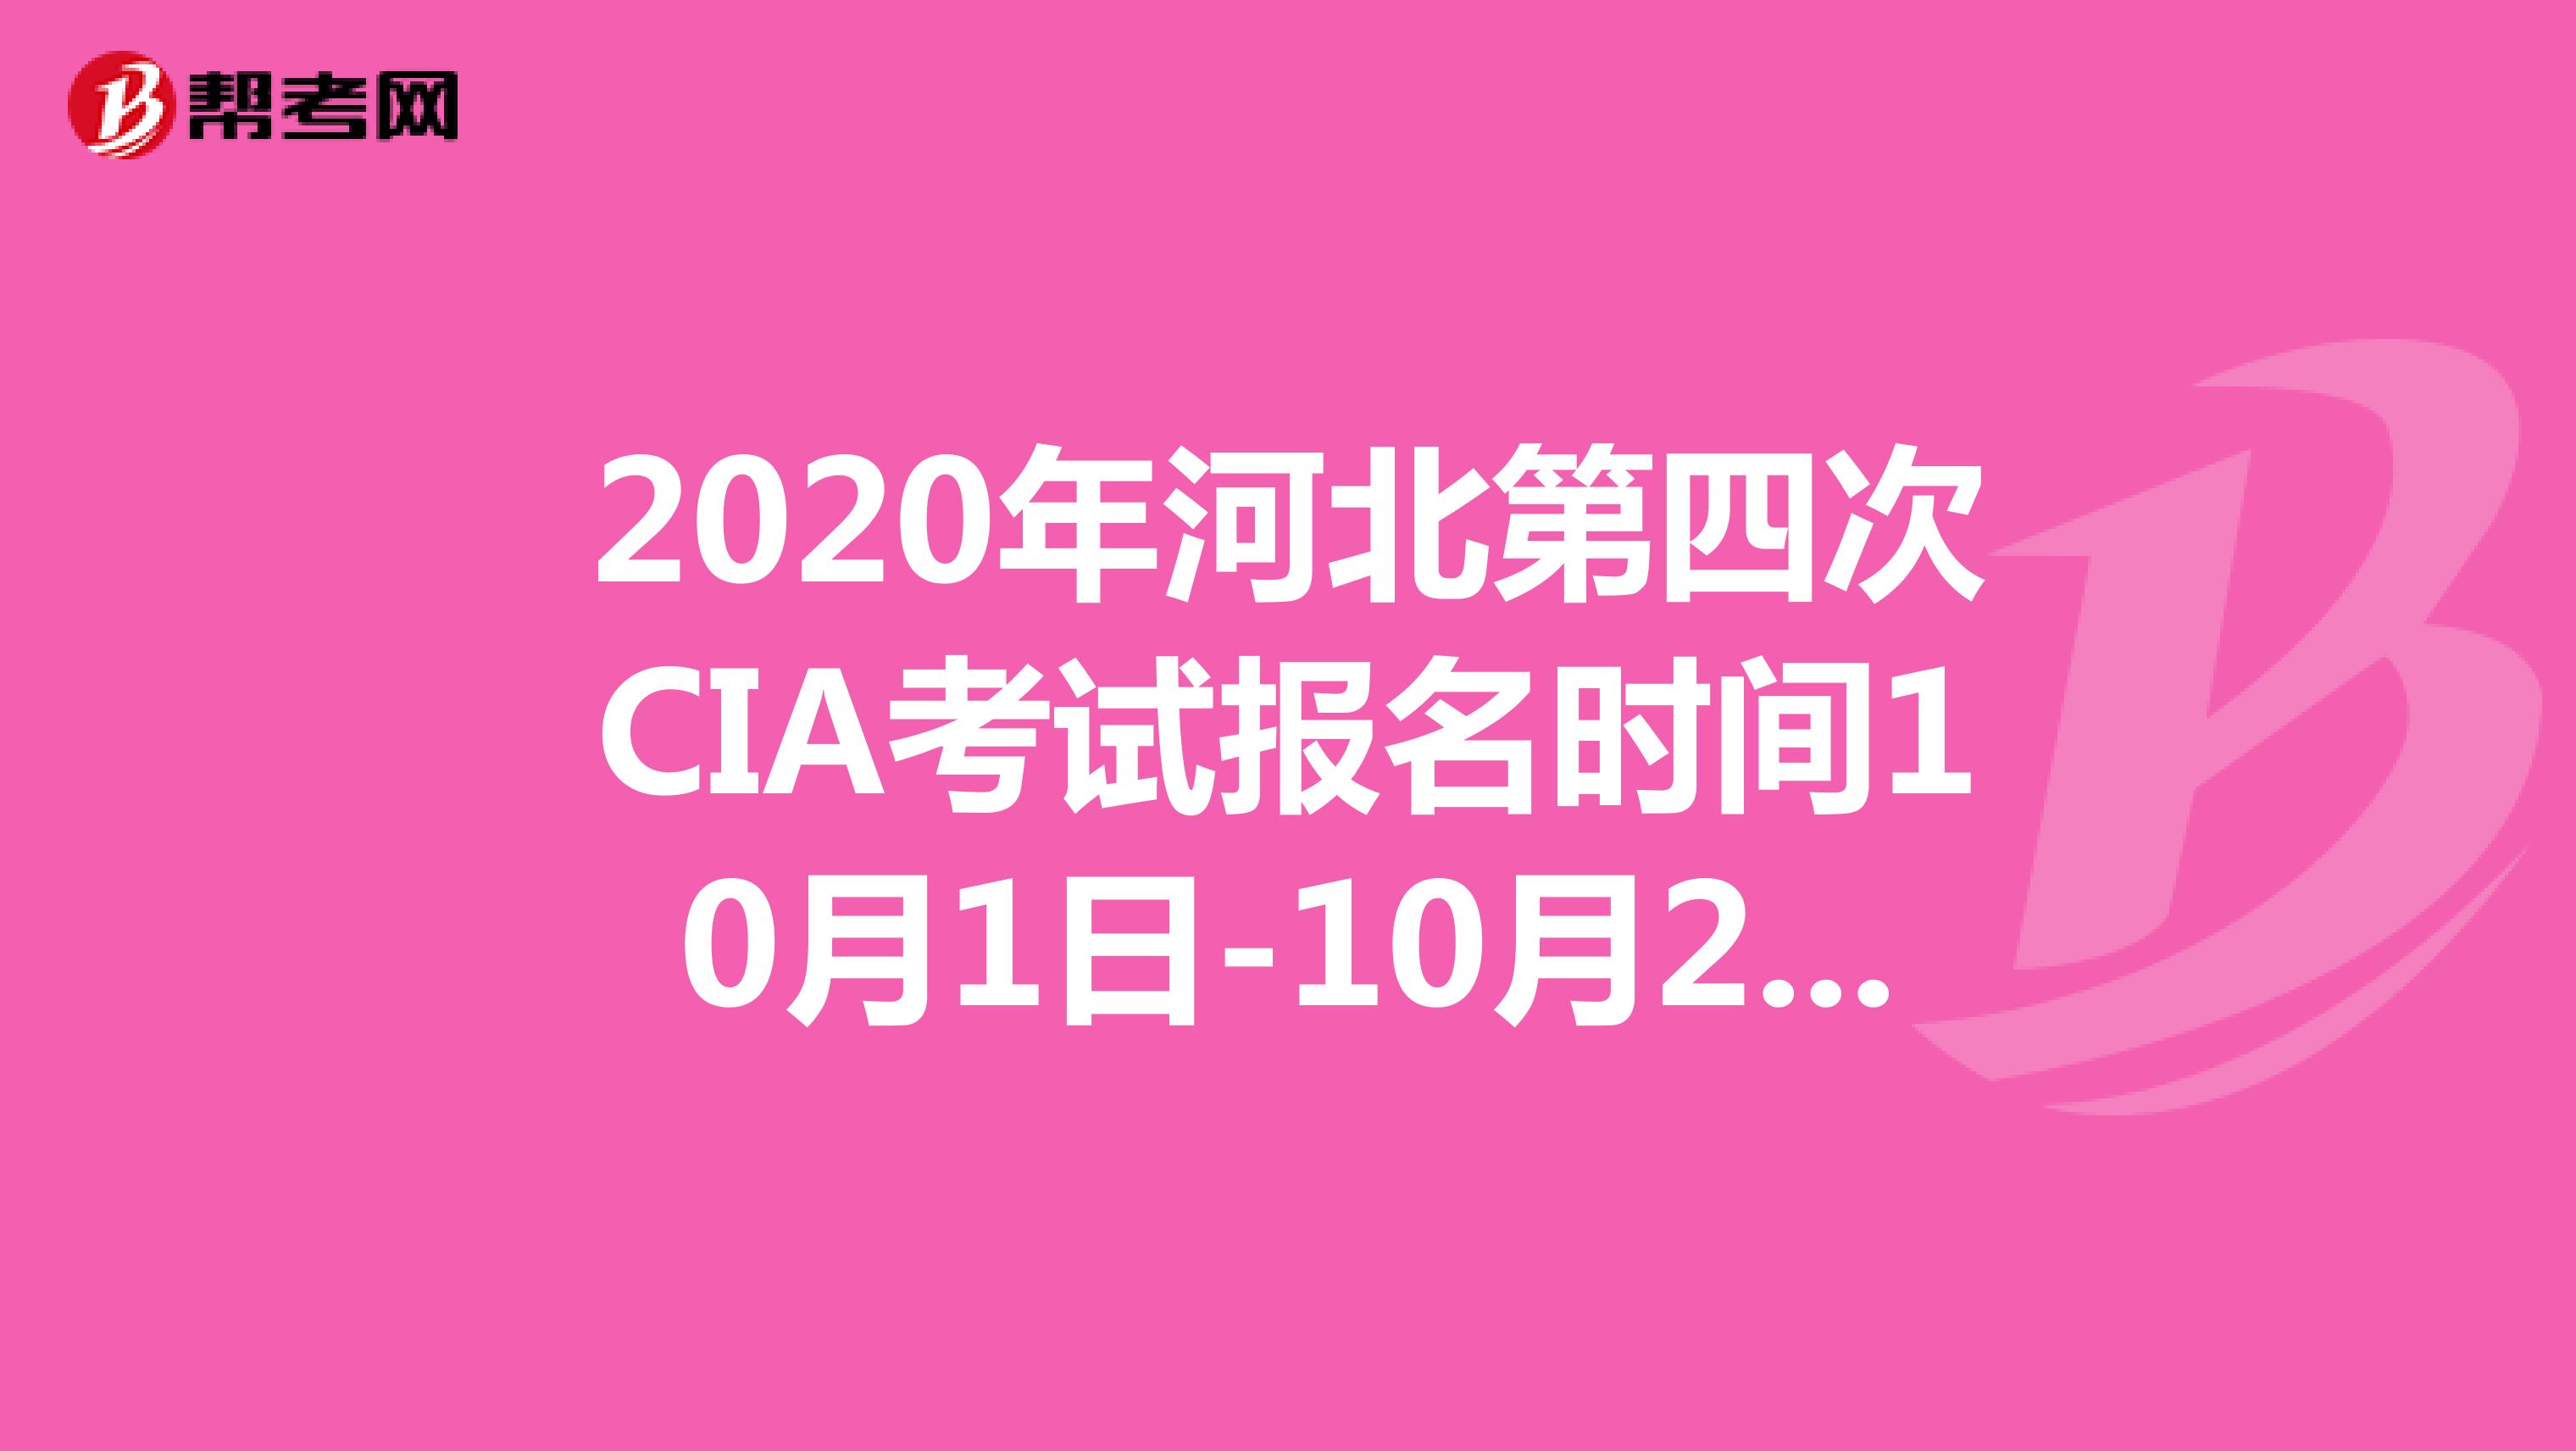 2020年河北第四次CIA考试报名时间10月1日-10月20日